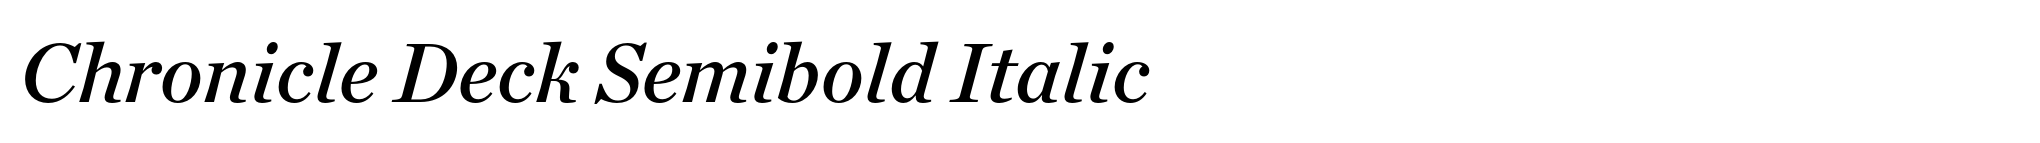 Chronicle Deck Semibold Italic image